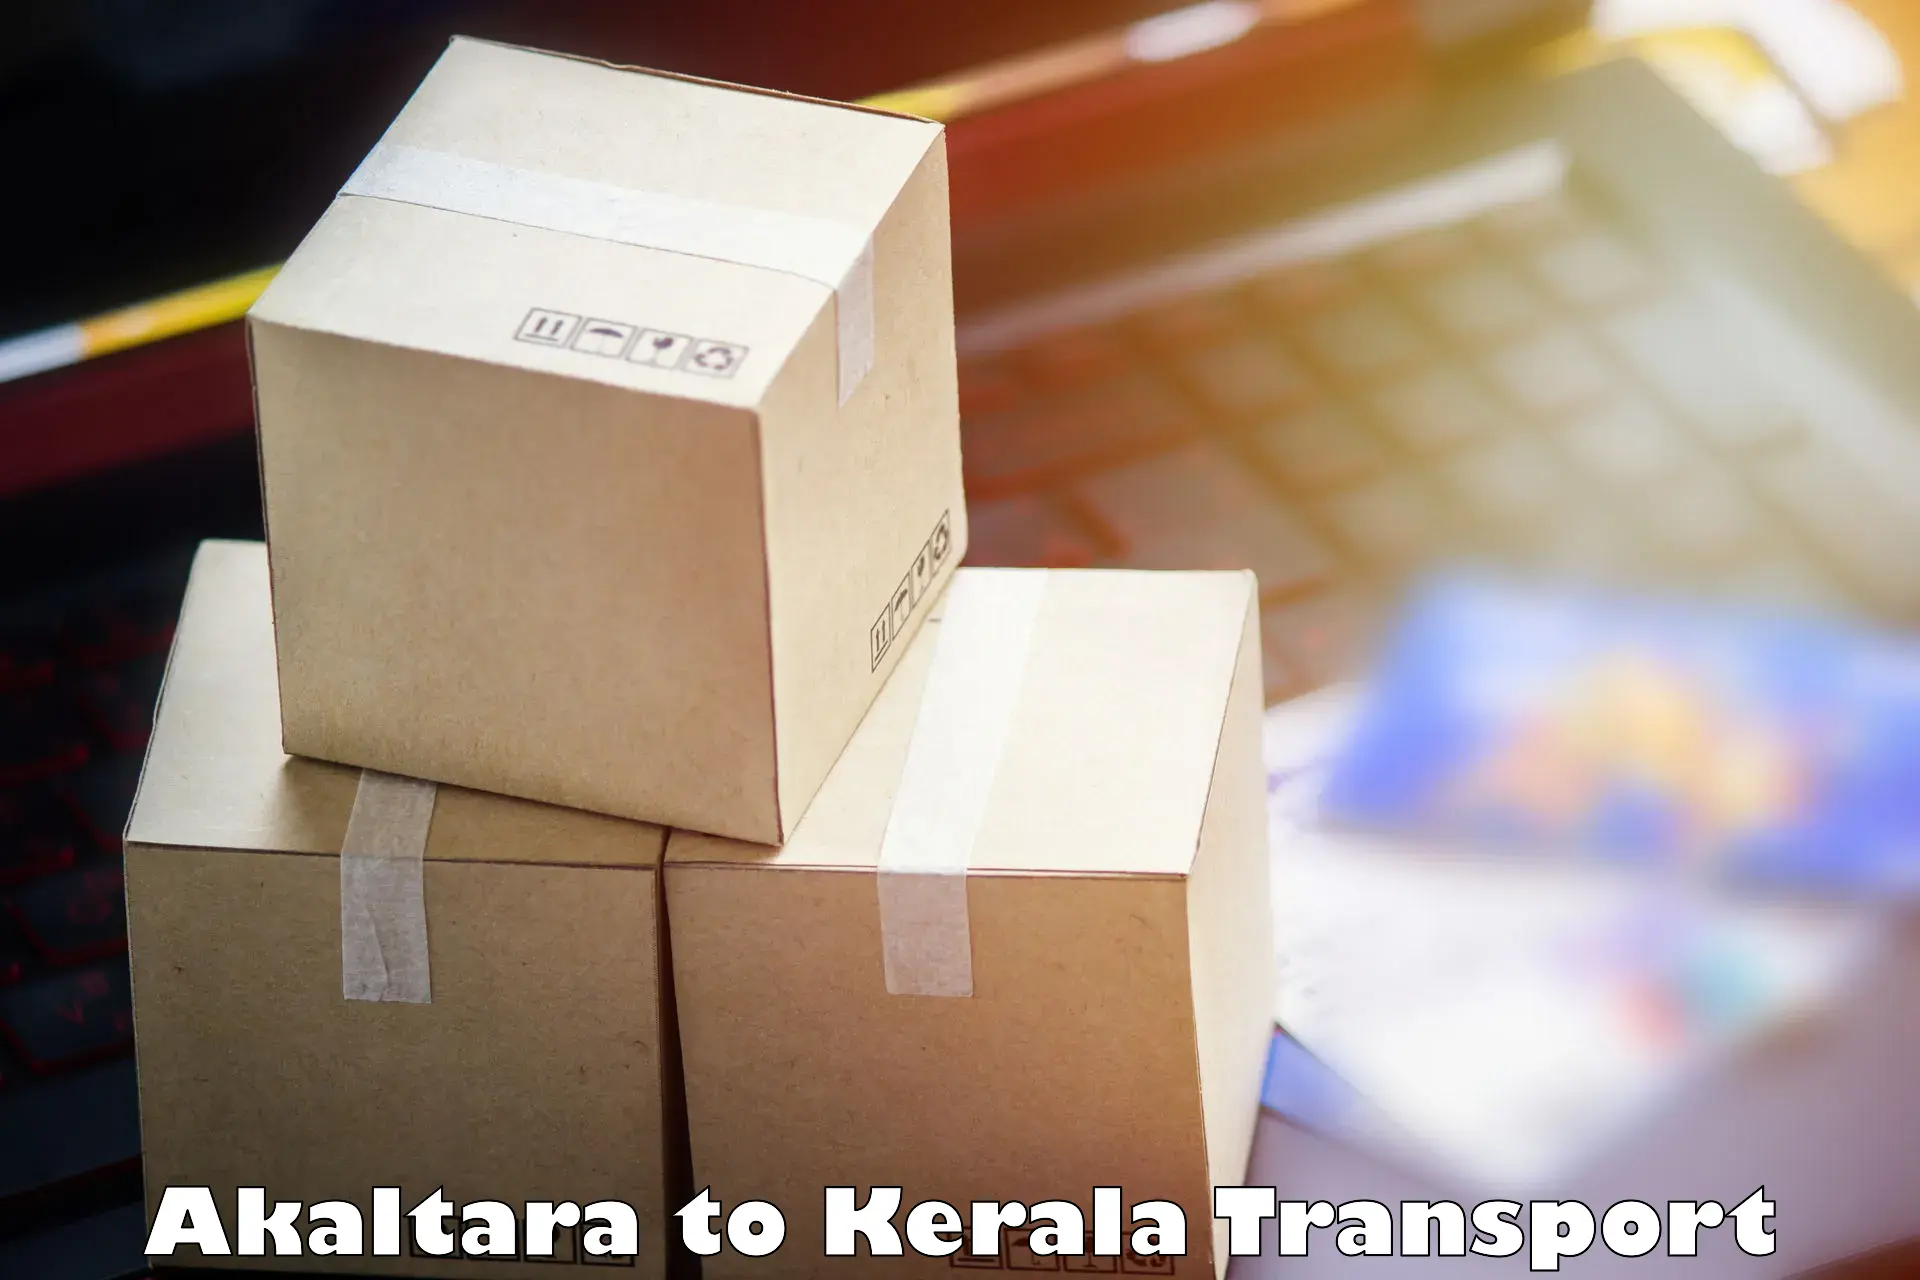 Daily transport service Akaltara to Panthalam